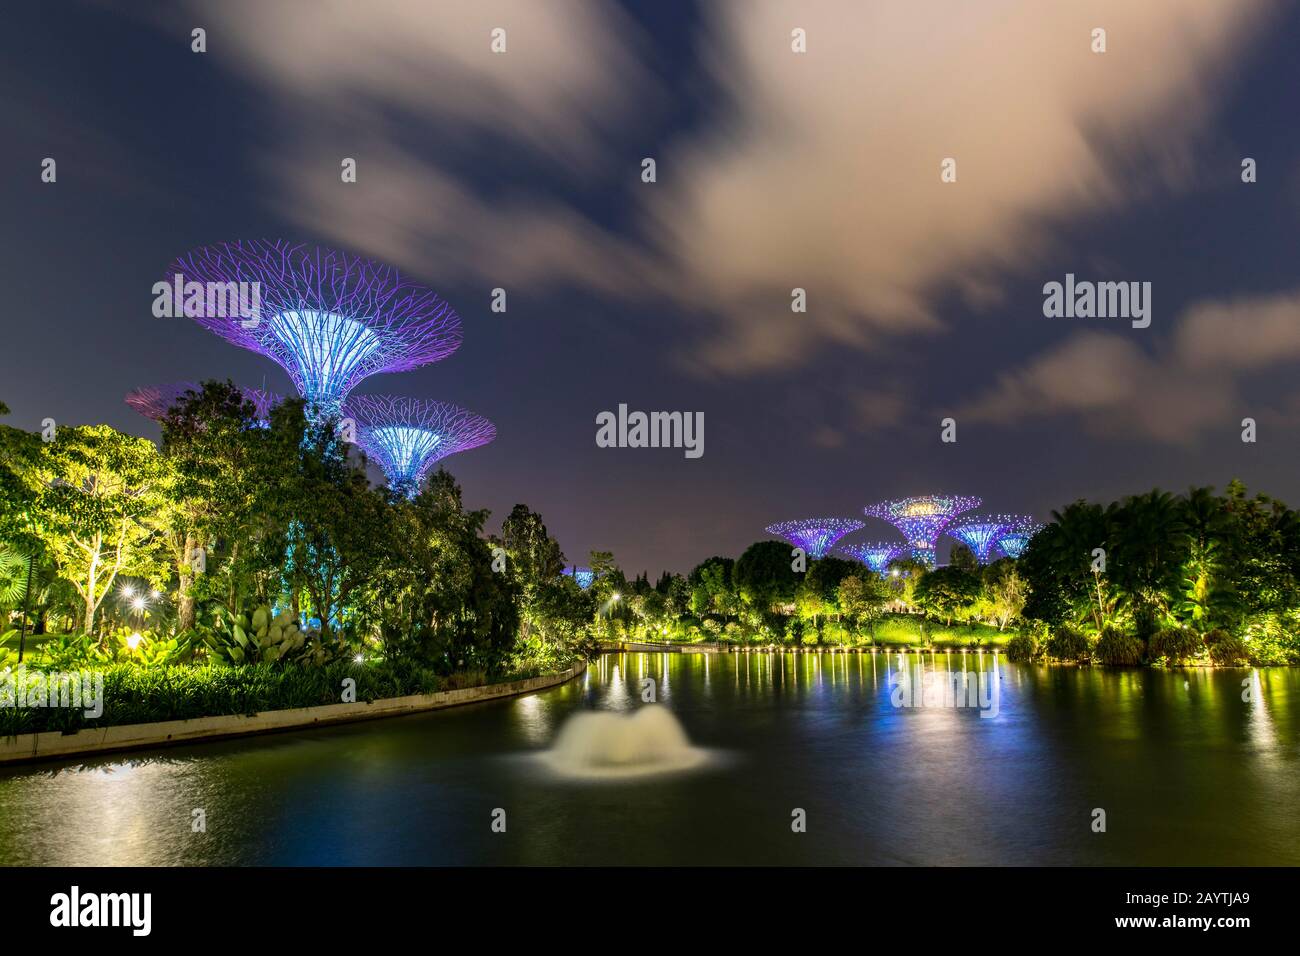 Superarbres au crépuscule, réflexion sur l'eau, jardins près de la baie, Singapour Banque D'Images